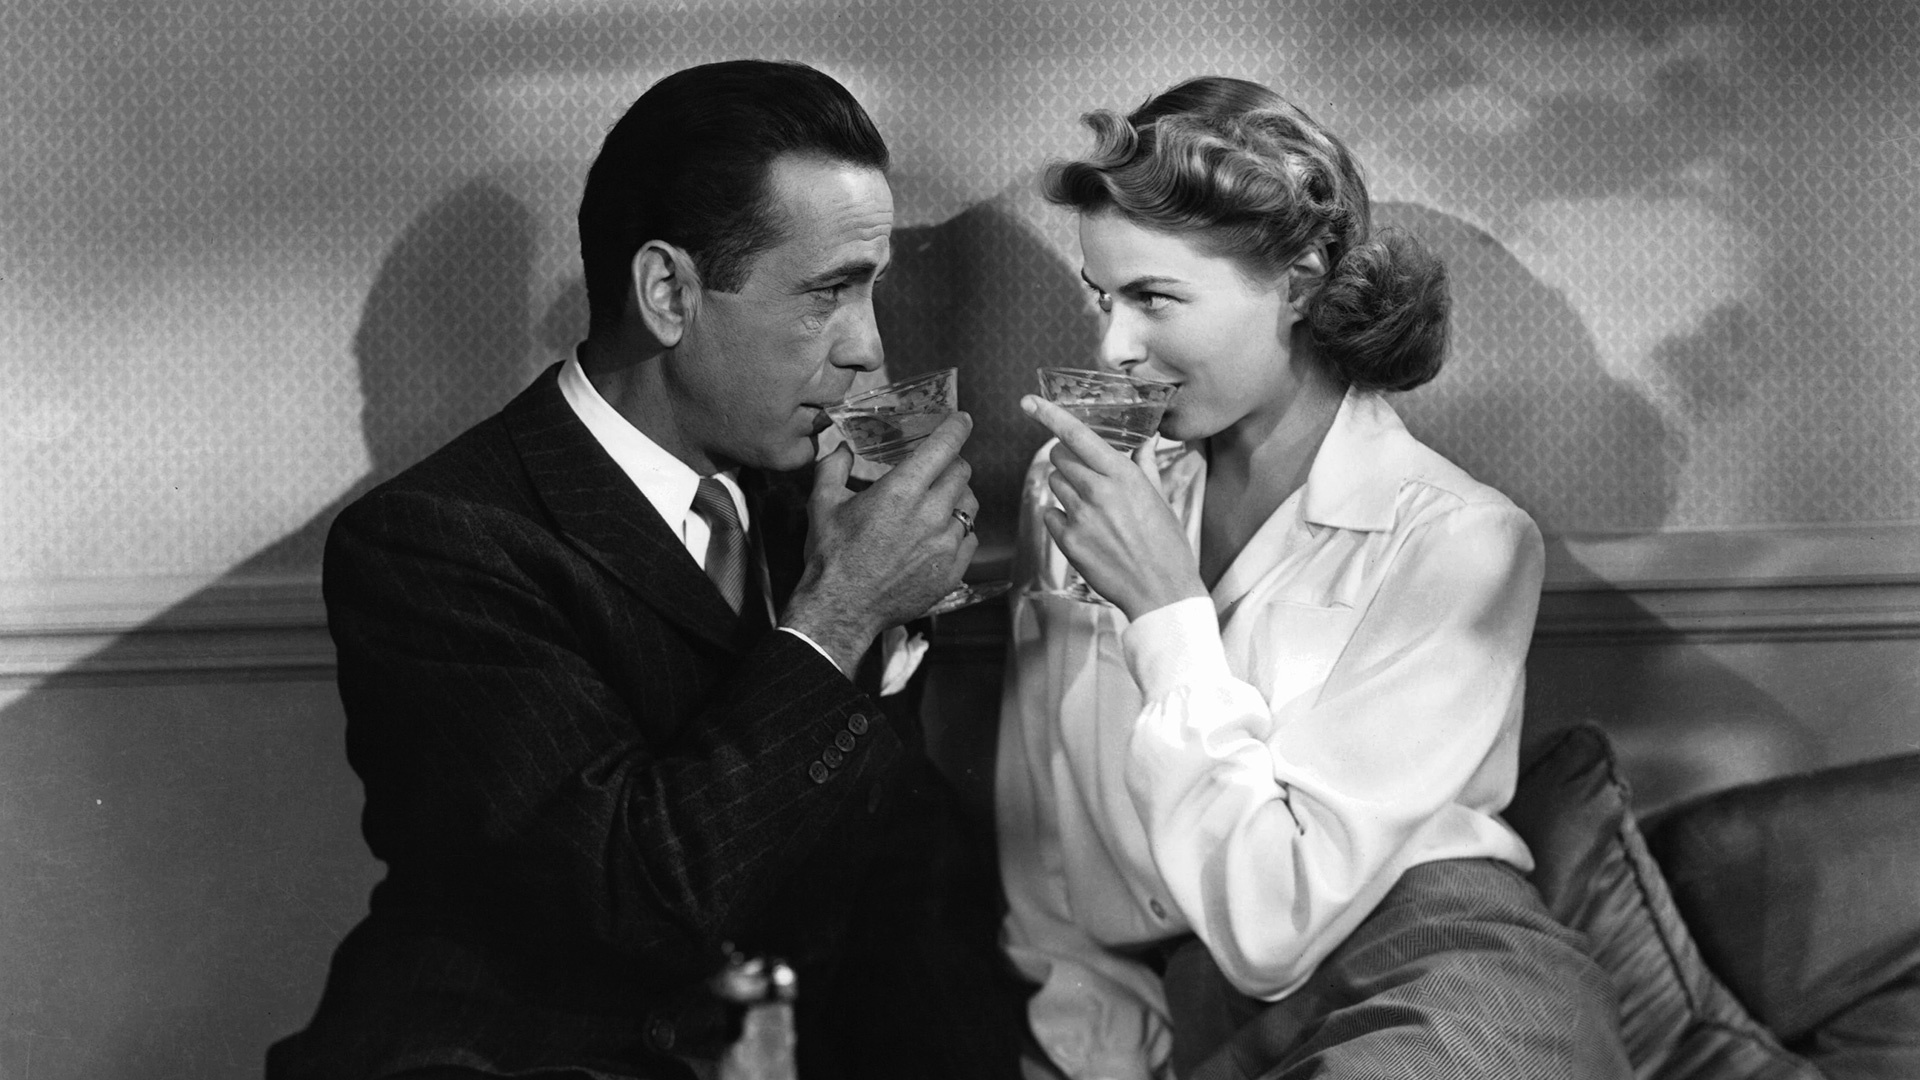 Casablanca, Movie premiere, Historical significance, Cultural milestone, 1920x1080 Full HD Desktop